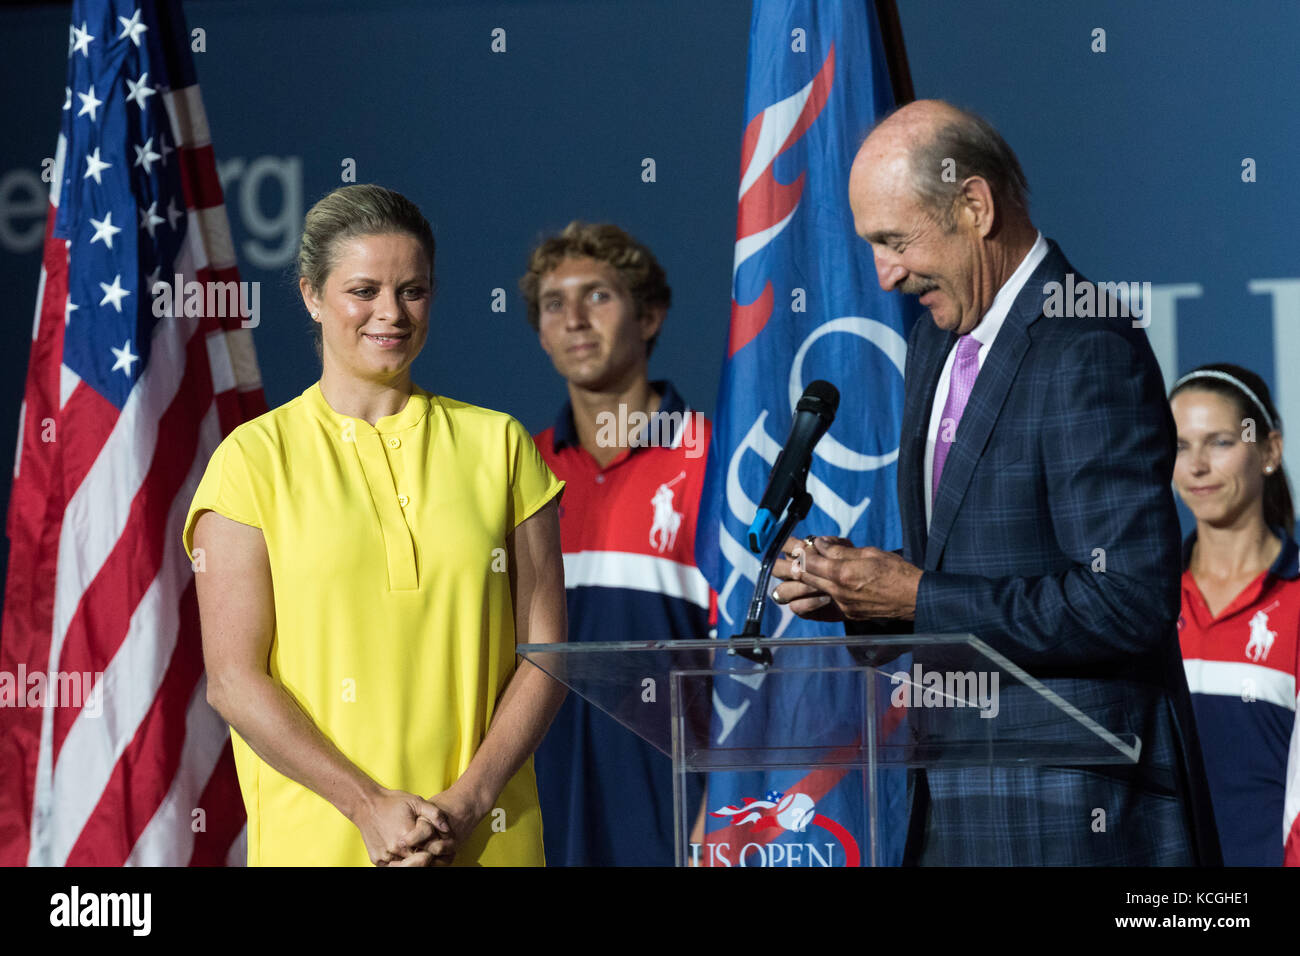 Kim Clijsters ricezione di tennis hall of fame anello da Stan Smith al 2017 US Open Tennis Championships. Foto Stock